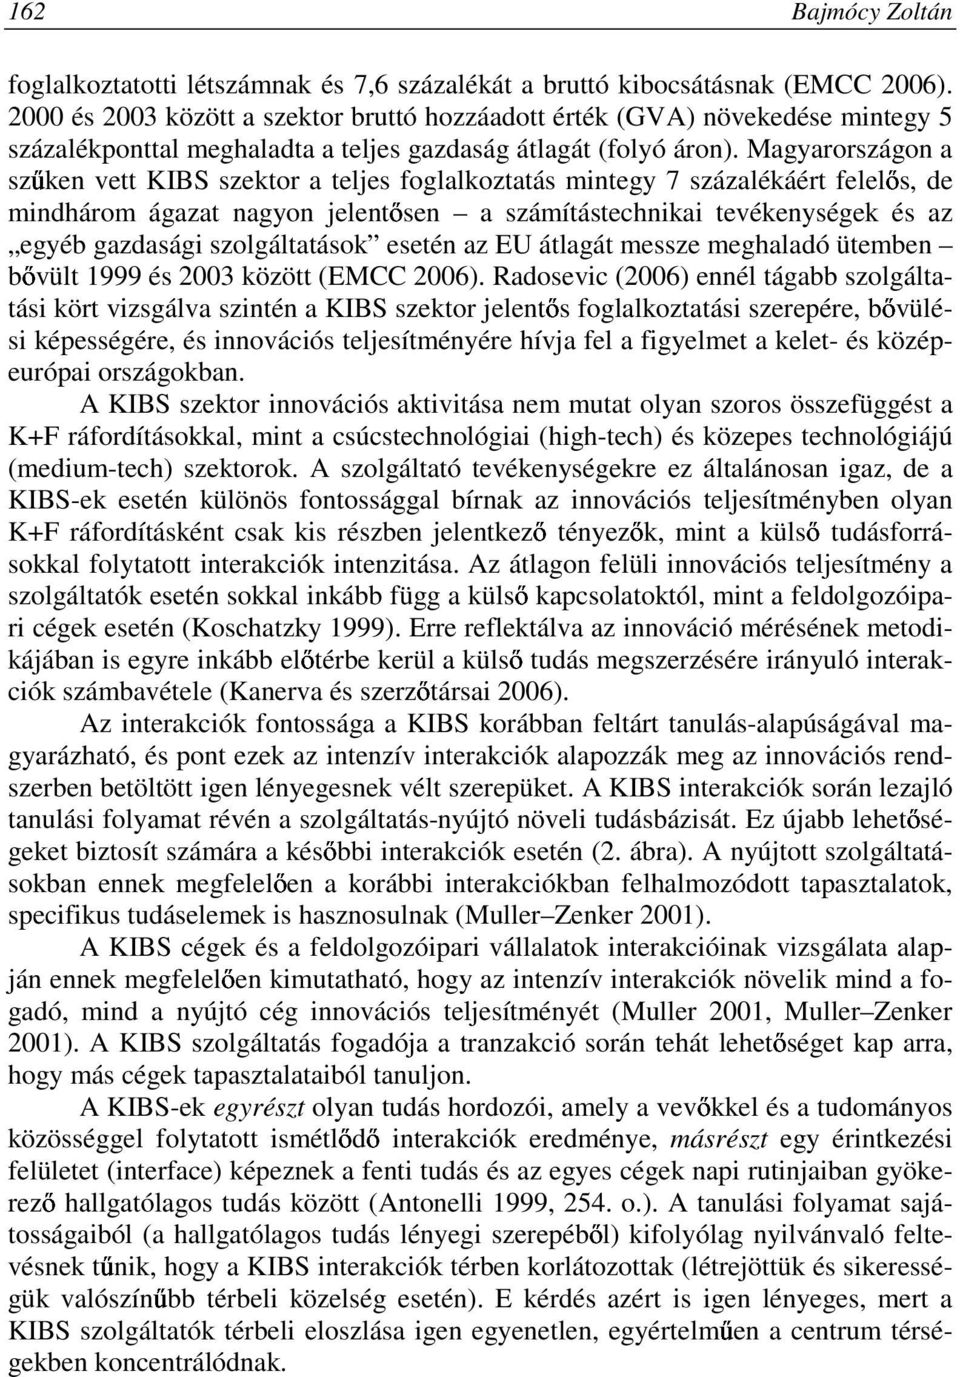 Magyarországon a szőken vett KIBS szektor a teljes foglalkoztatás mintegy 7 százalékáért felelıs, de mindhárom ágazat nagyon jelentısen a számítástechnikai tevékenységek és az egyéb gazdasági